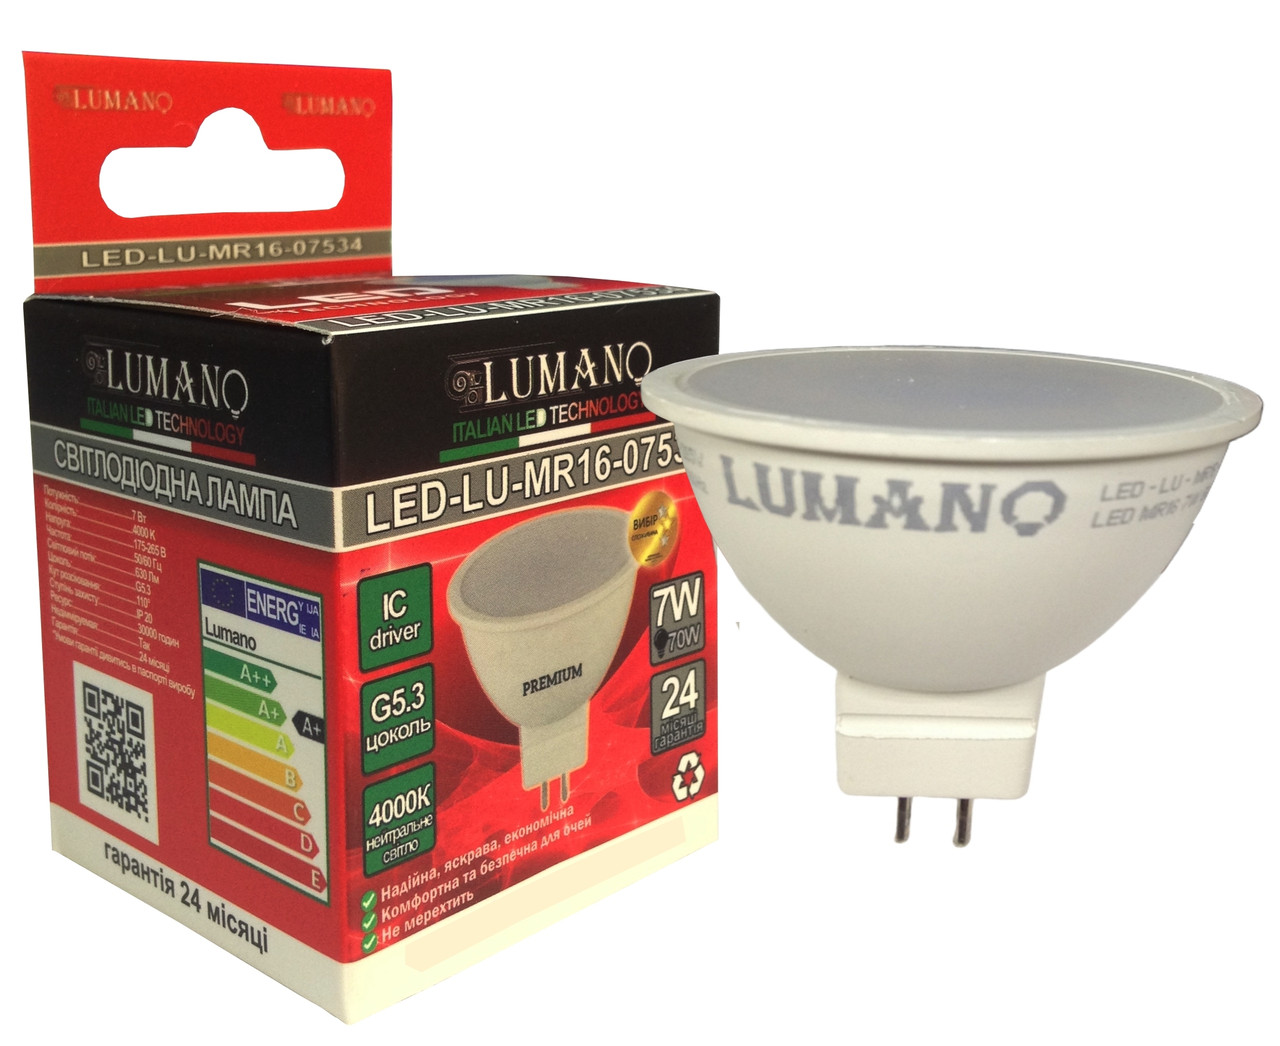 Лампа LED MR16-7W-GU5.3-4000K 630Lm LU-MR16-07534 (100шт/ящ) (24міс.гарантії) TM LUMANO